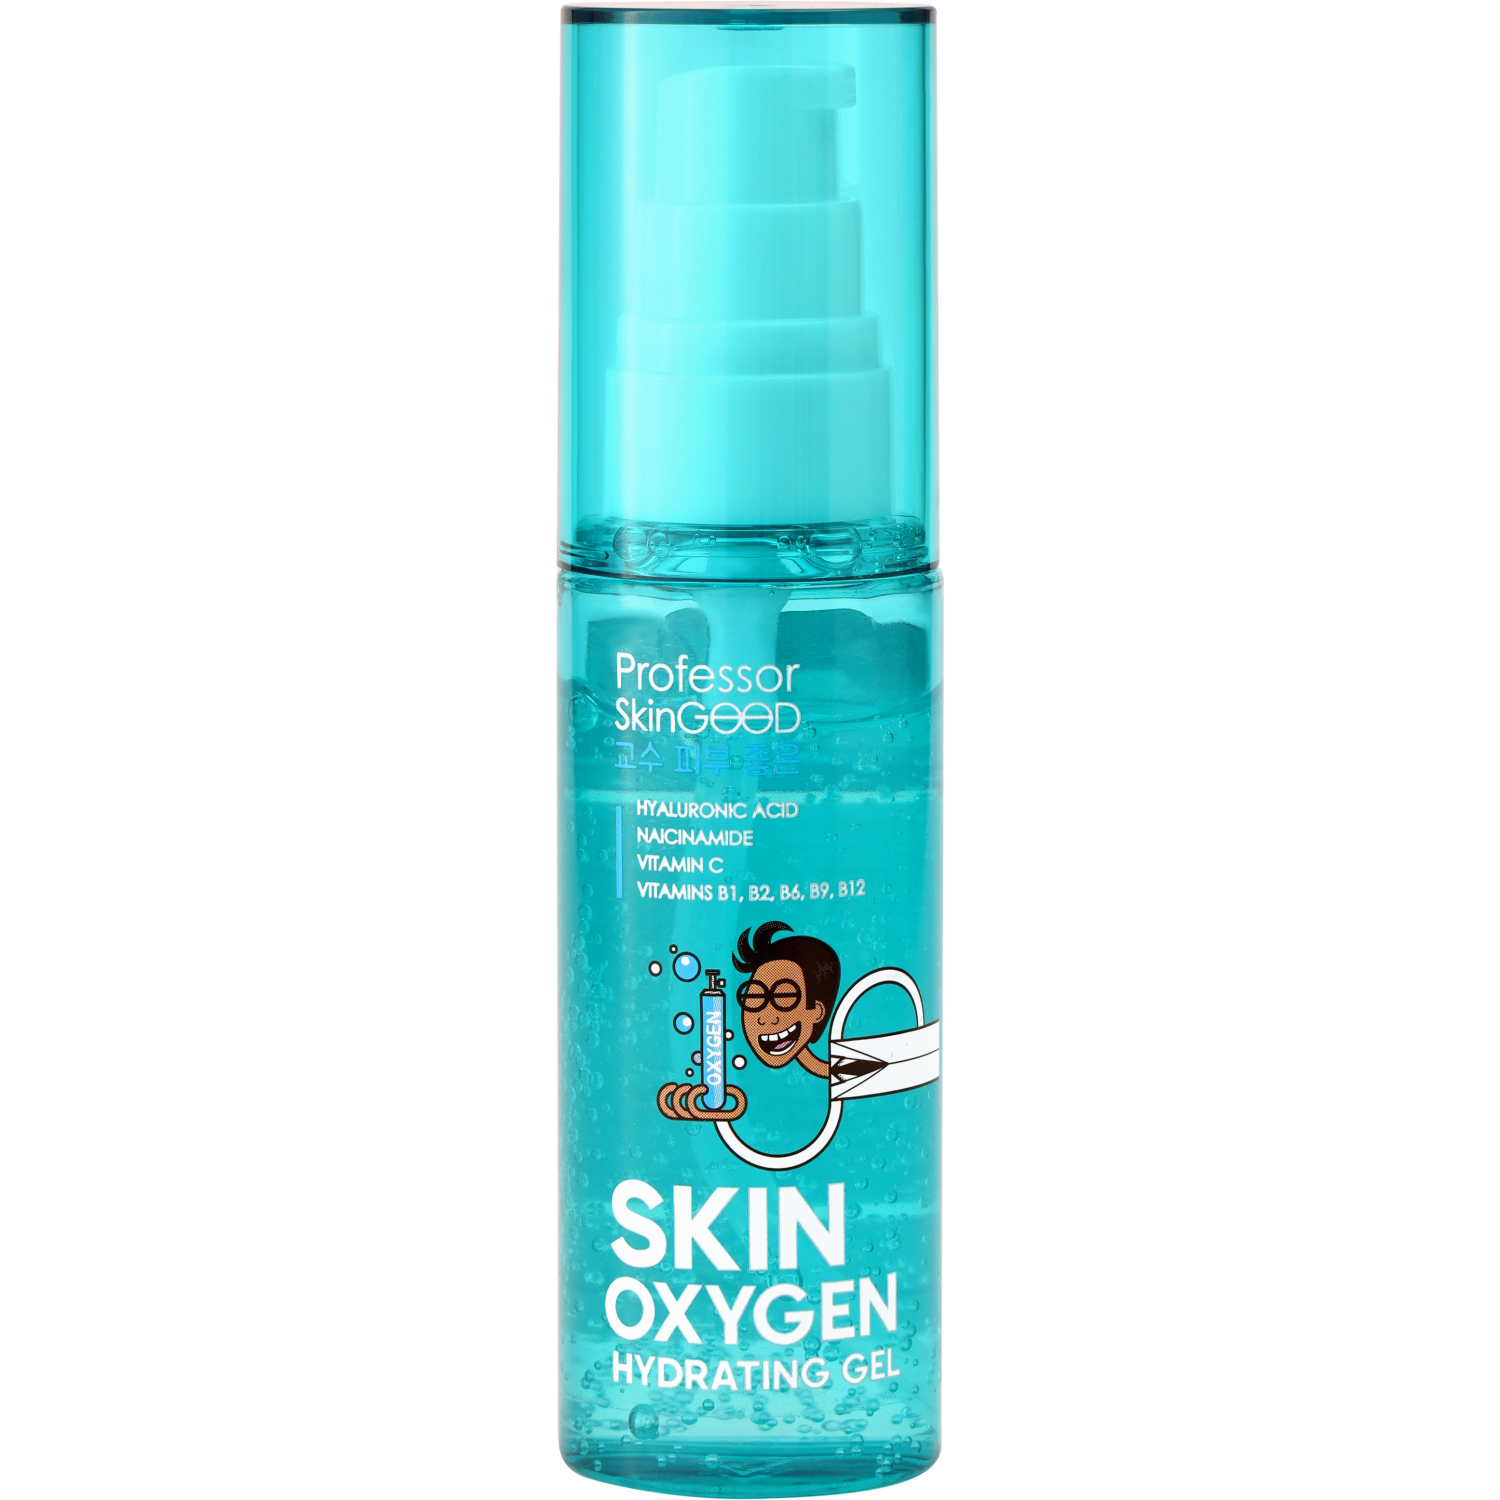 Гель для лица Professor SkinGOOD Skin Oxygen ультралегкий, увлажняющий 50 мл крем для лица каждый день с экстрактом календулы 50 мл